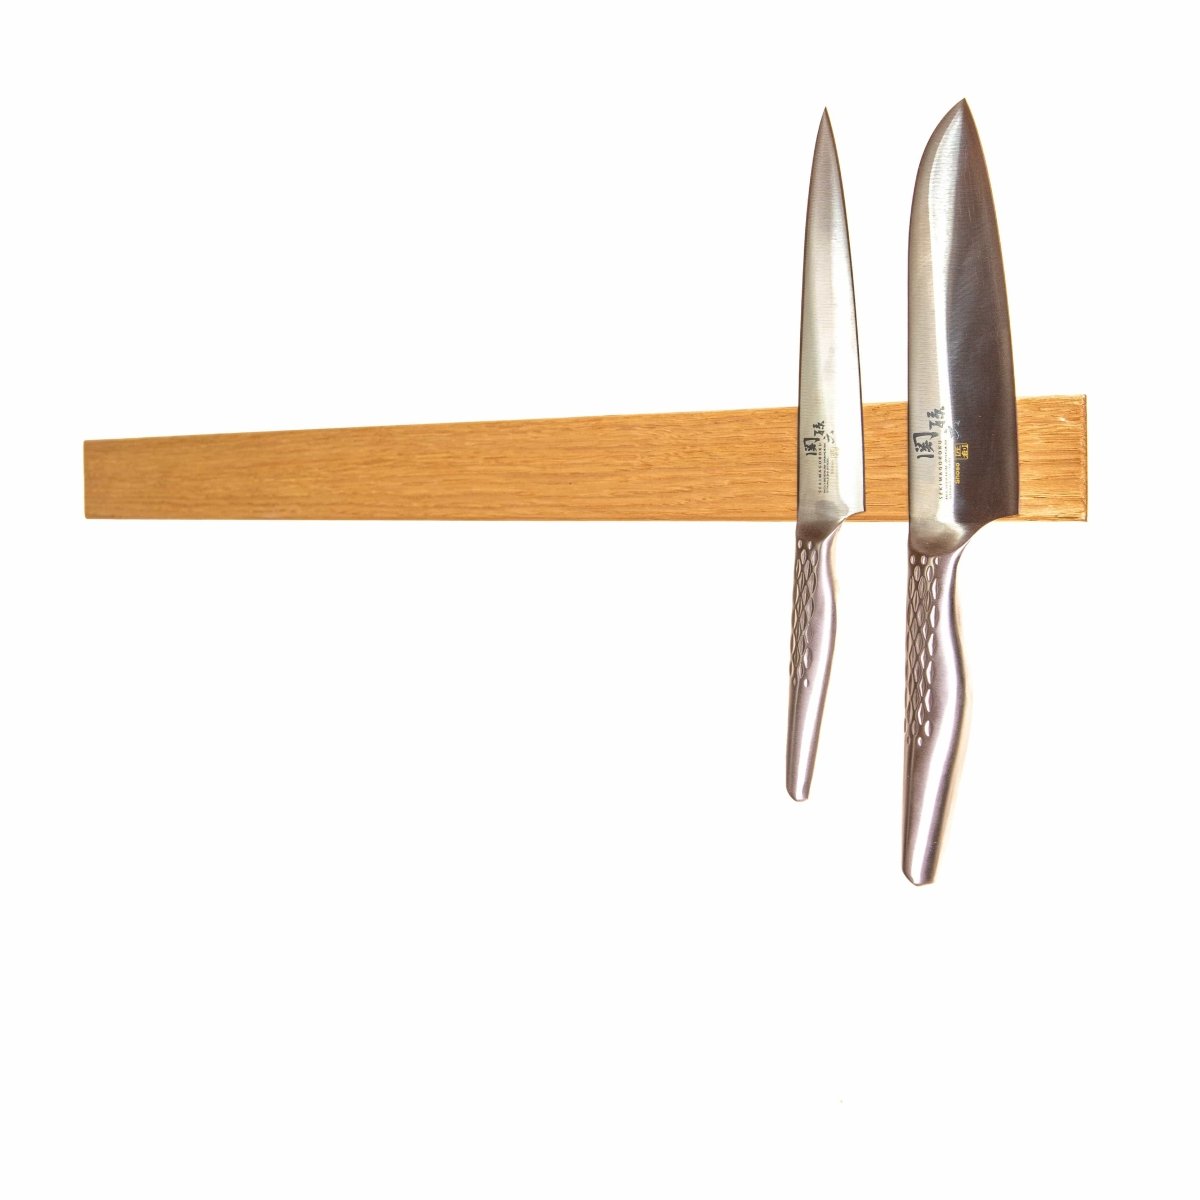 Rune-Jakobsen Woodworks 'Knifeboard Exclusive' dyb knivmagnet_14 by Rune-Jakobsen Design